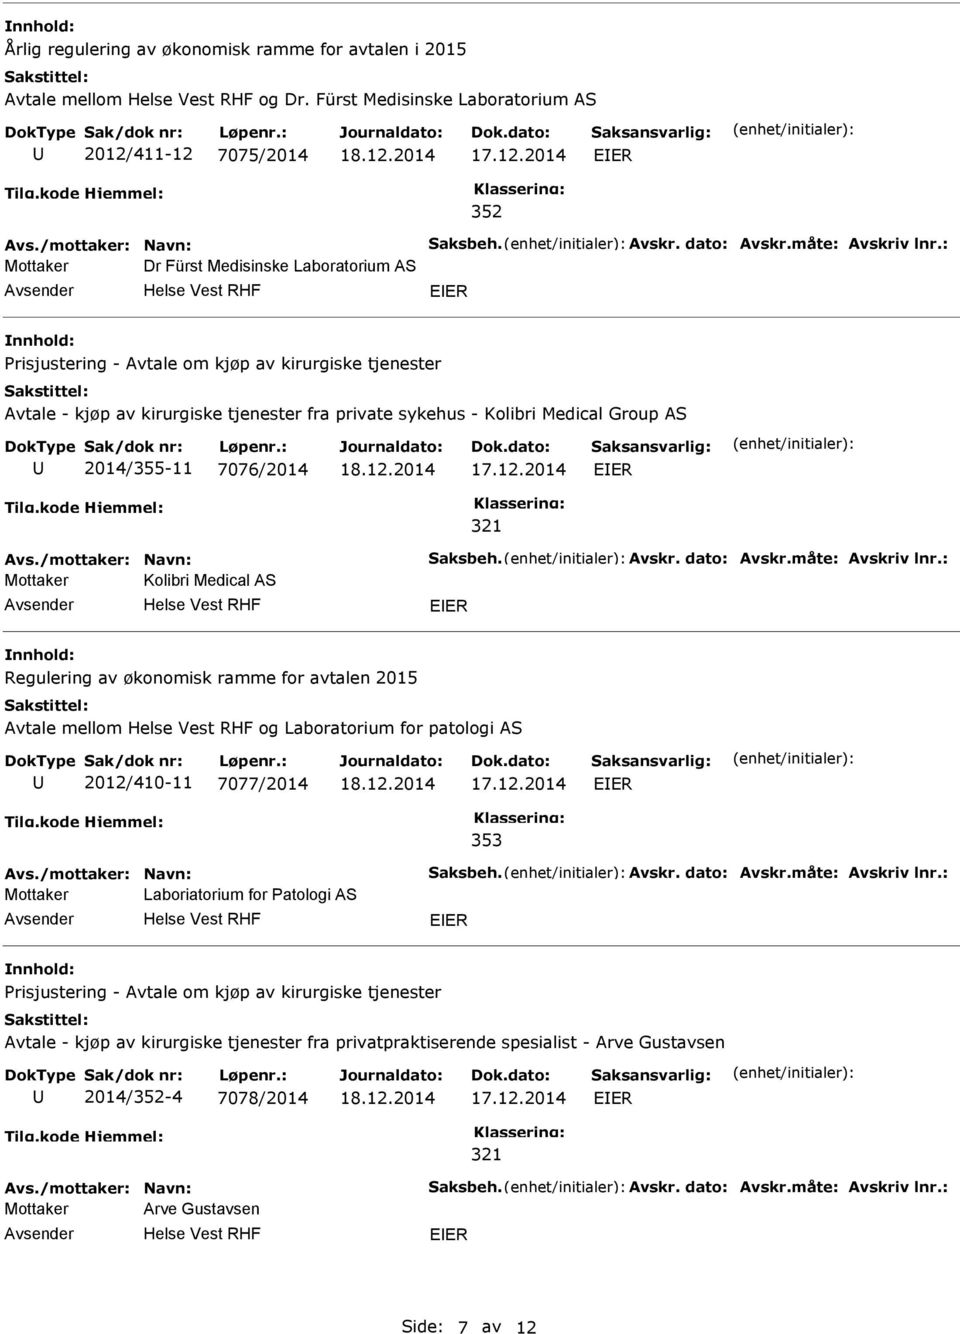 sykehus - Kolibri Medical Group AS 2014/355-11 7076/2014 Mottaker Kolibri Medical AS Regulering av økonomisk ramme for avtalen 2015 Avtale mellom og